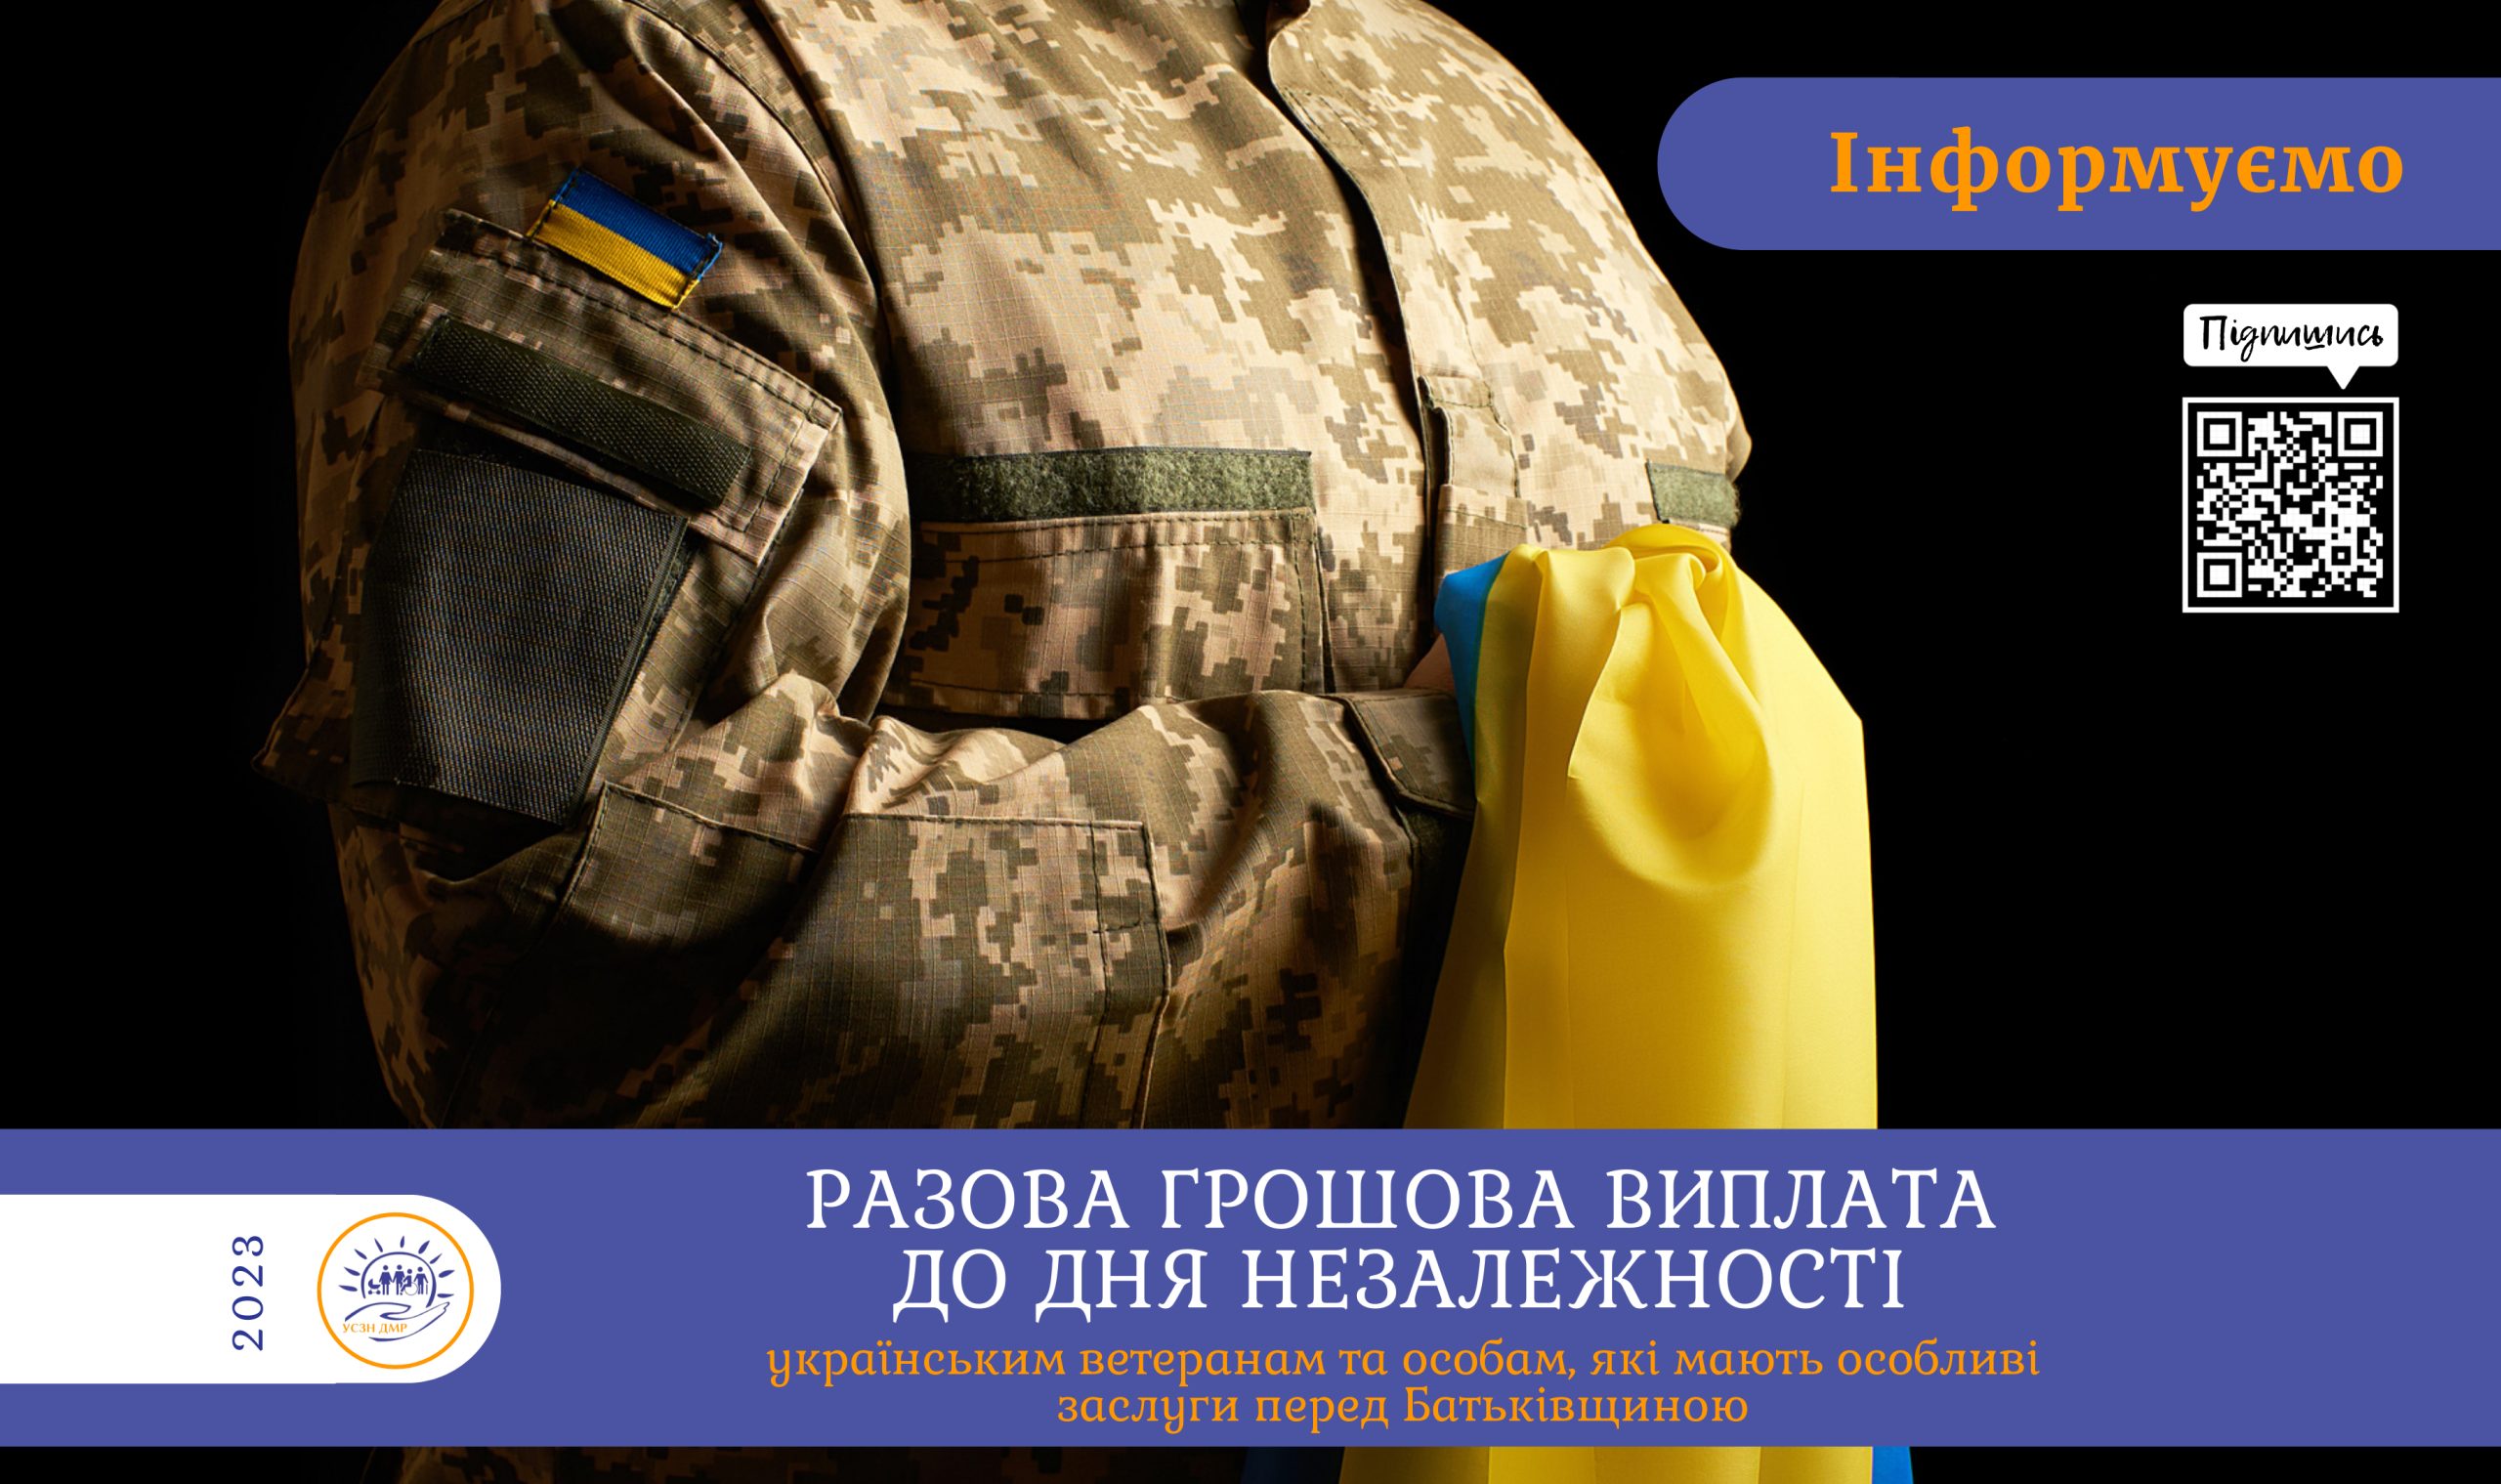 Разова грошова виплата українським ветеранам та особам, які мають особливі заслуги перед Батьківщиною